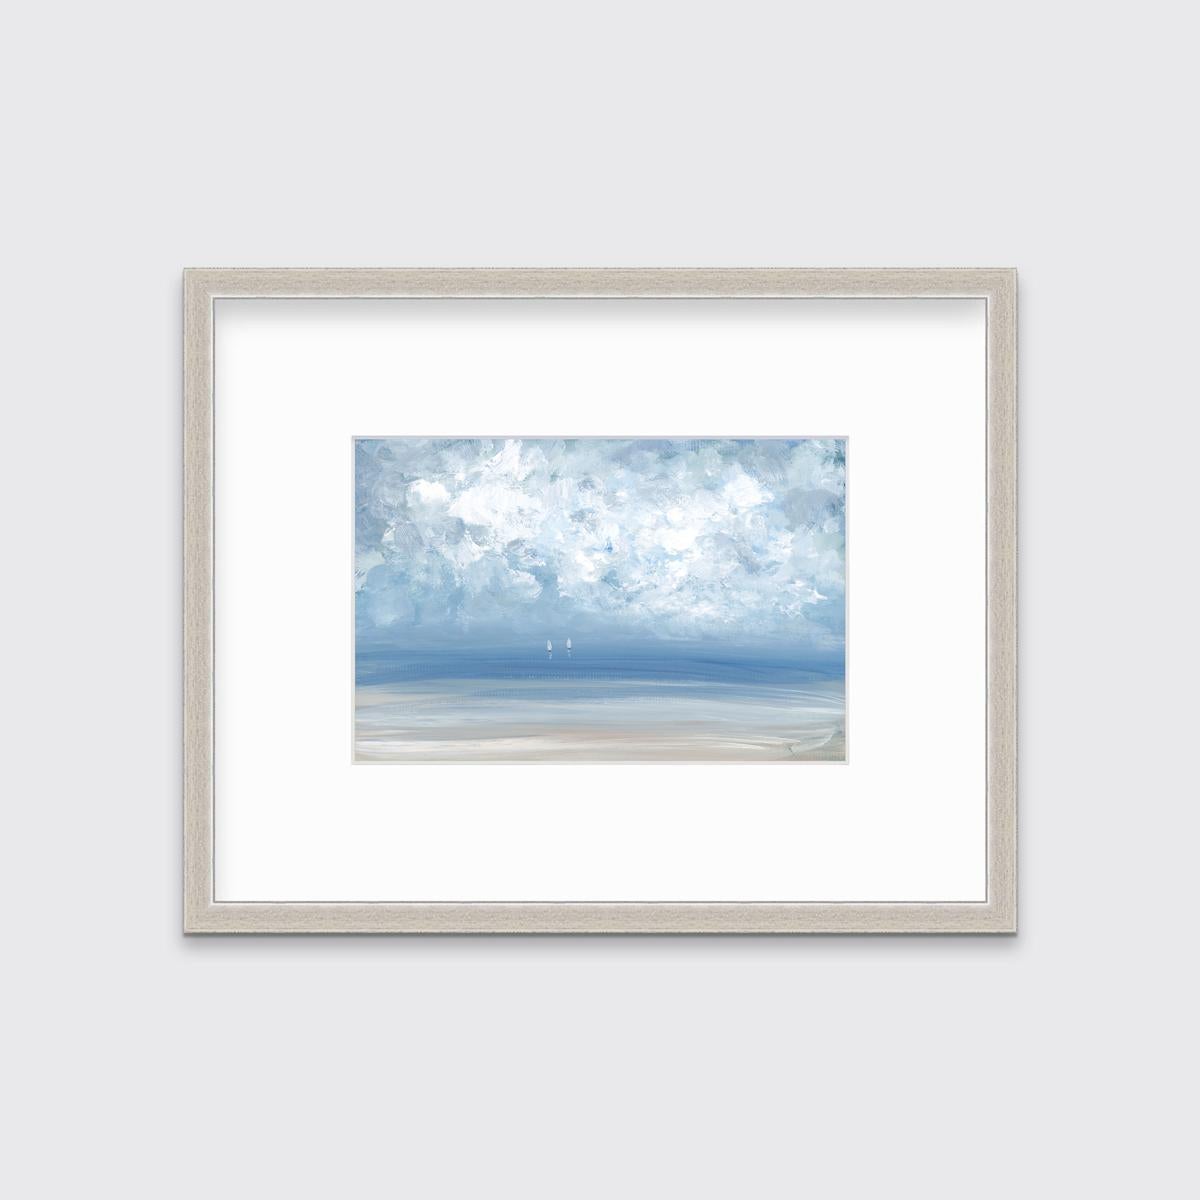 S. Cora Aldo Landscape Print – „High Clouds“, gerahmter Giclee-Druck in limitierter Auflage, 6" x 9"